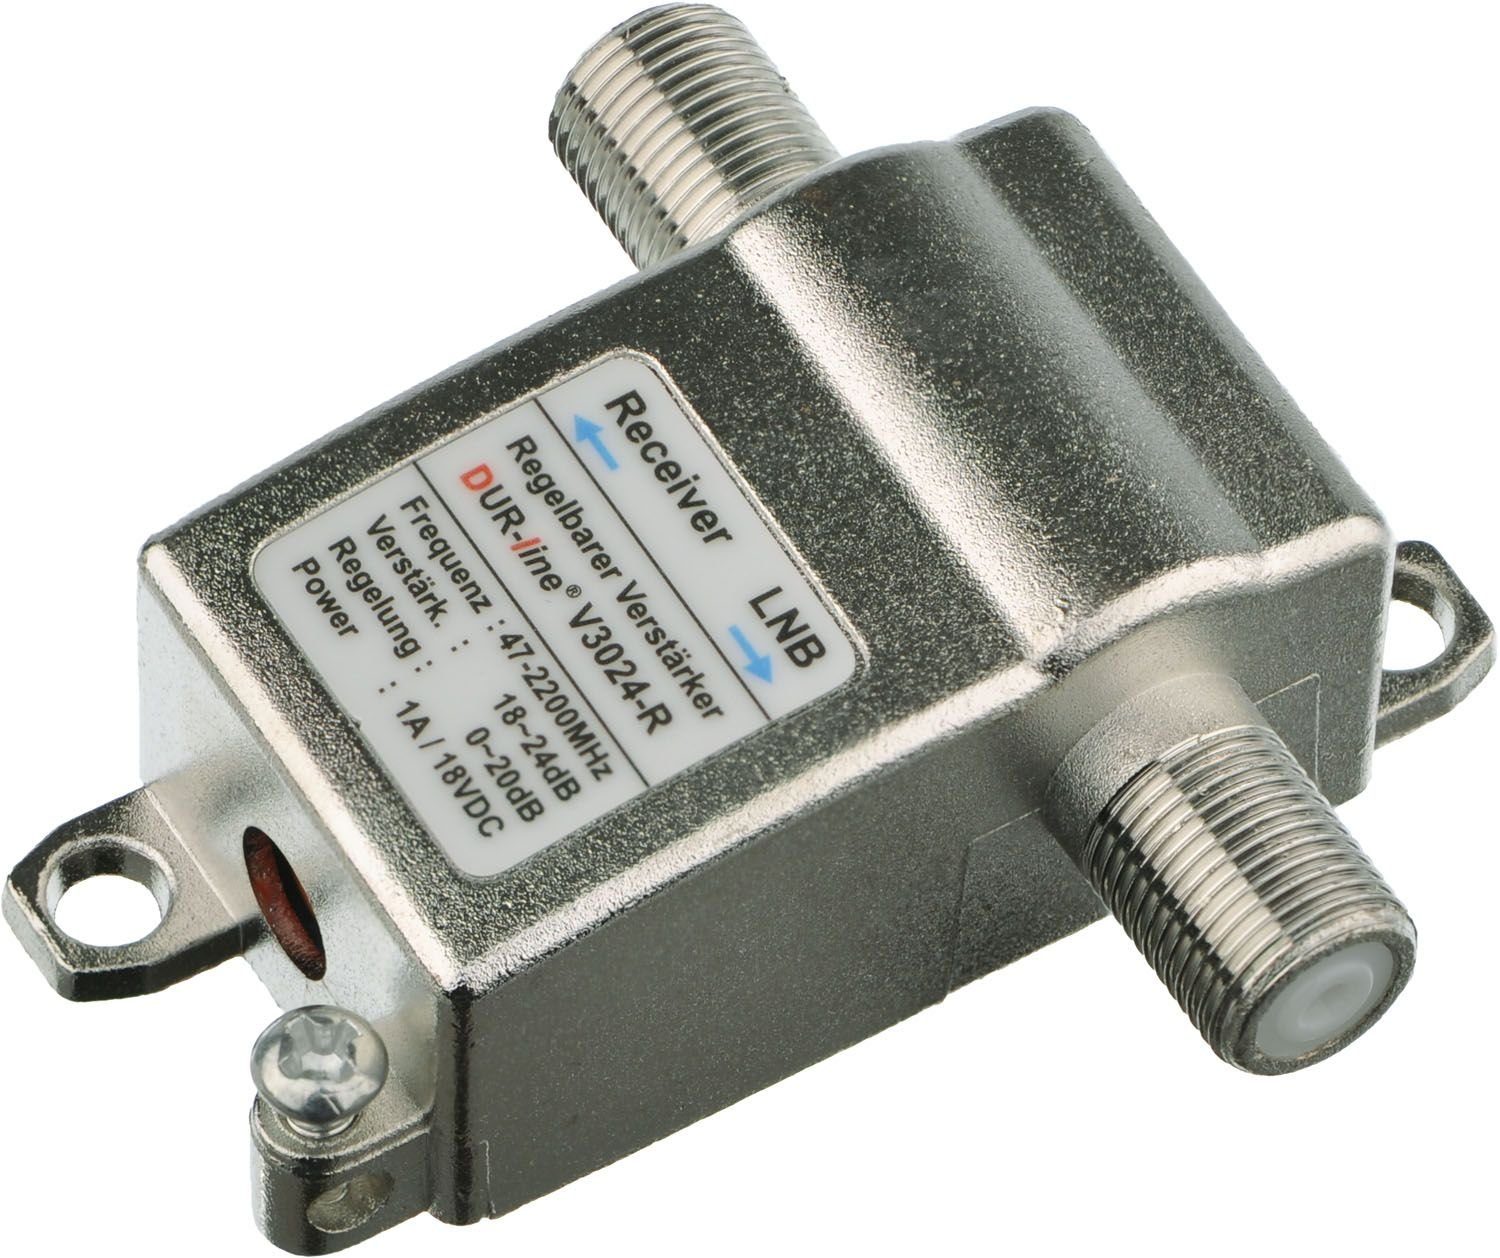 DUR-line V3024-R - DUR-line Inlineverstärker SAT-Kabel